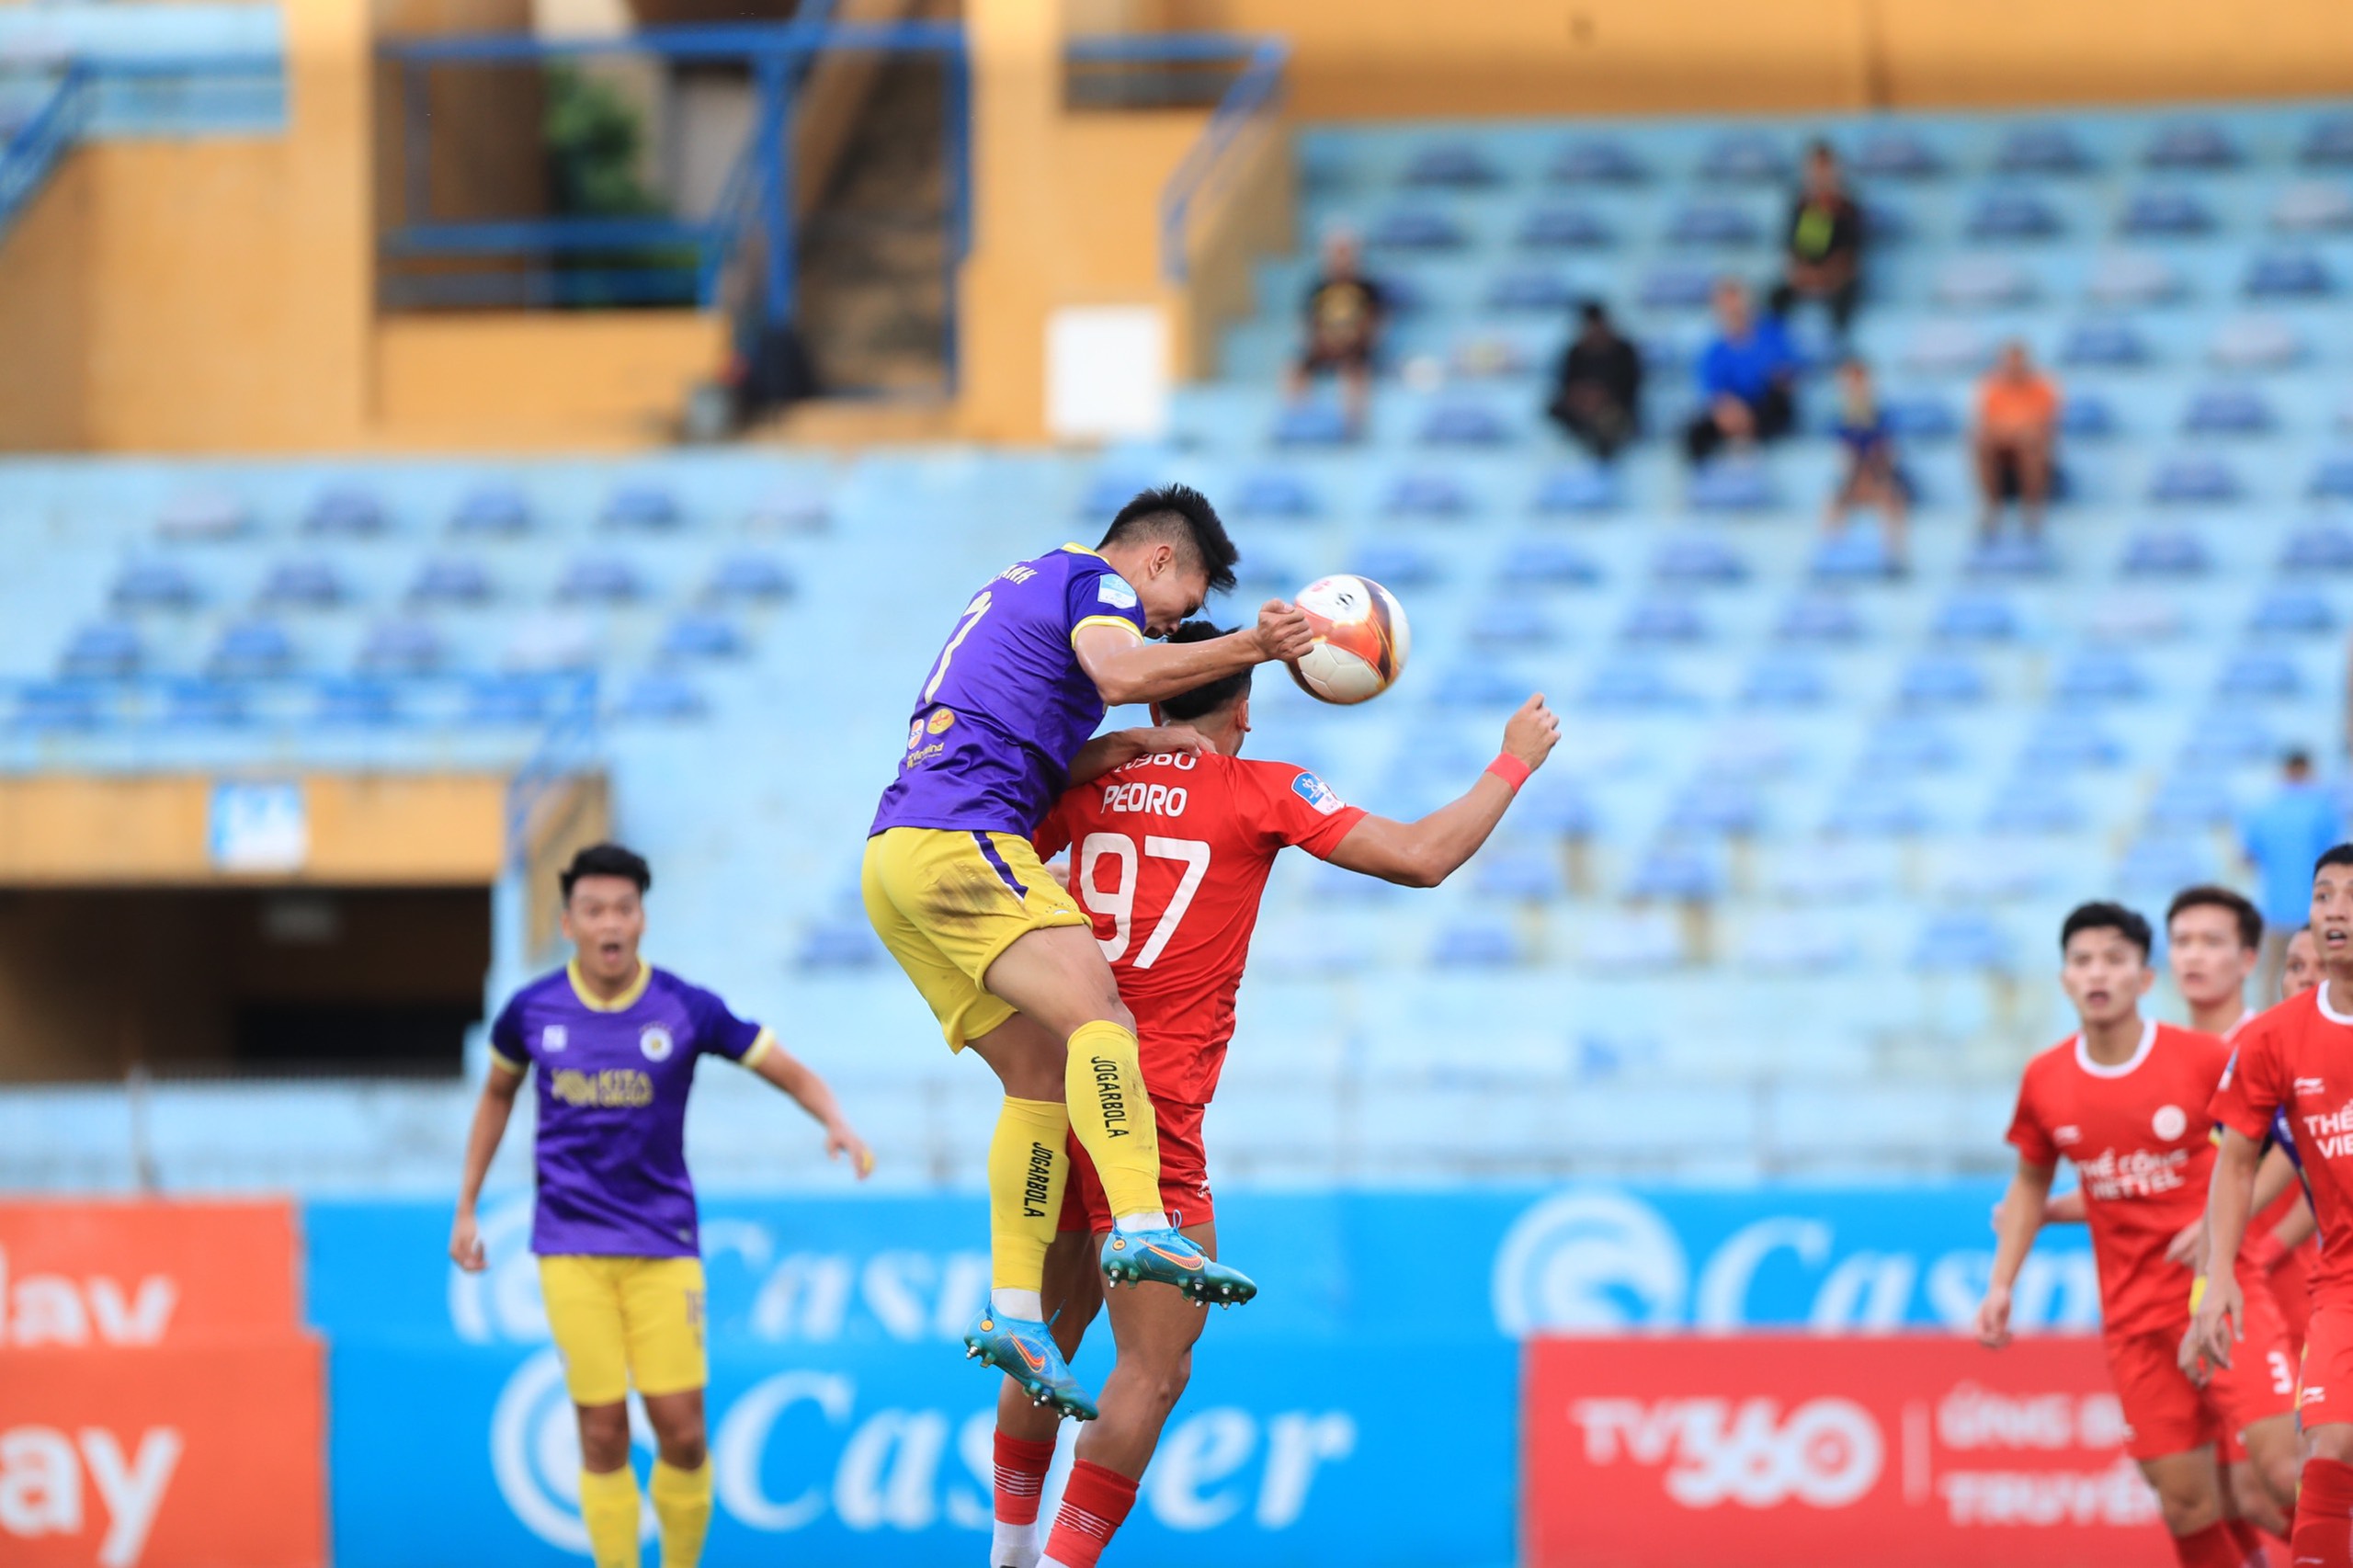 Tin nóng bóng đá Việt 5/7: HLV Nhật Bản lo phải đá trên mặt sân xấu, Thể Công Viettel chỉ giữ lại một ngoại binh - Ảnh 2.